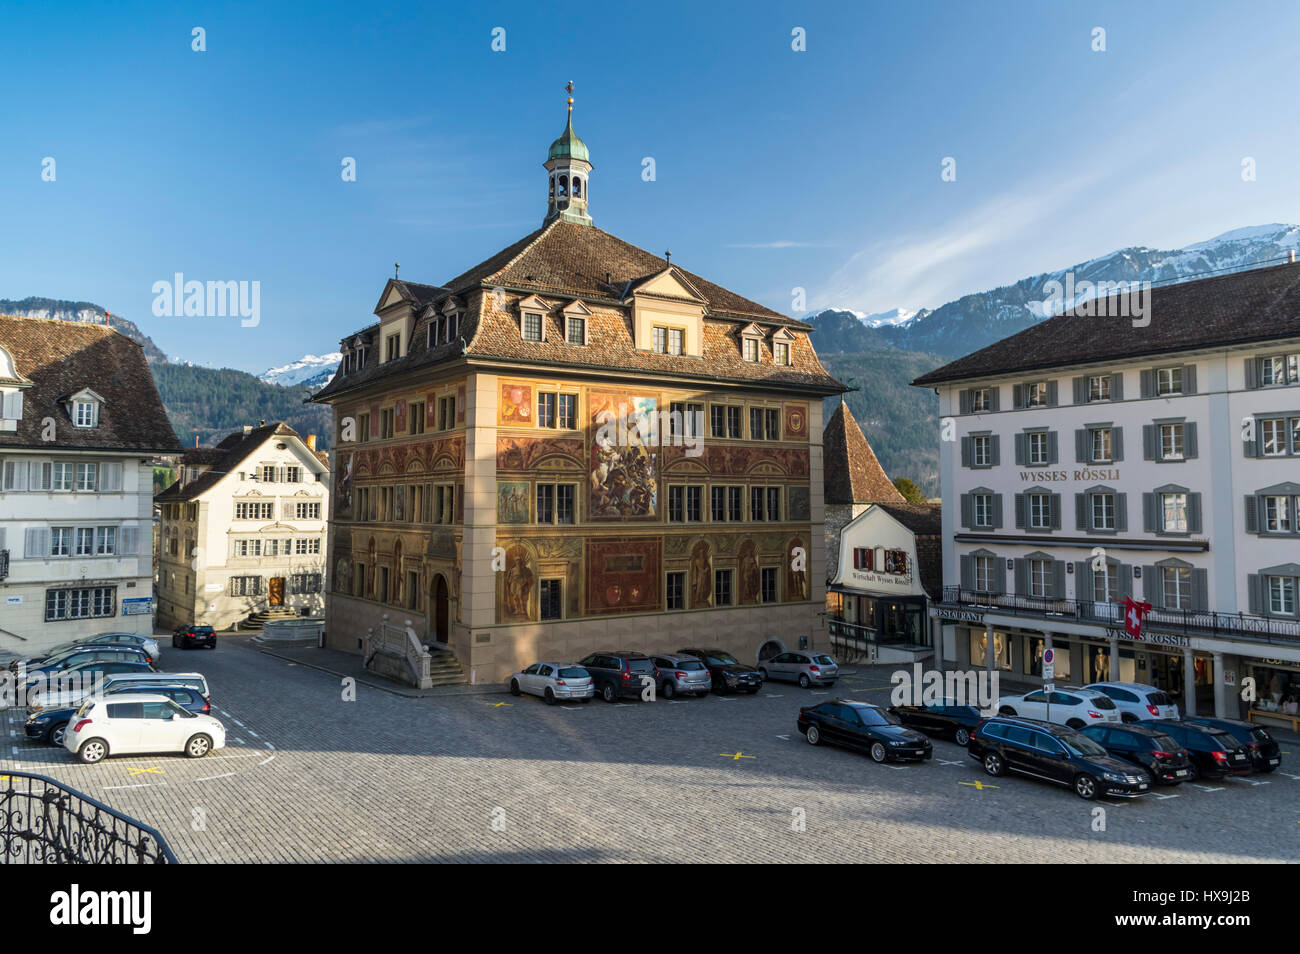 Ayuntamiento de Schwyz, capital del cantón suizo de Schwyz, con un elaborado mural de la batalla de Morgarten (1315). Foto de stock